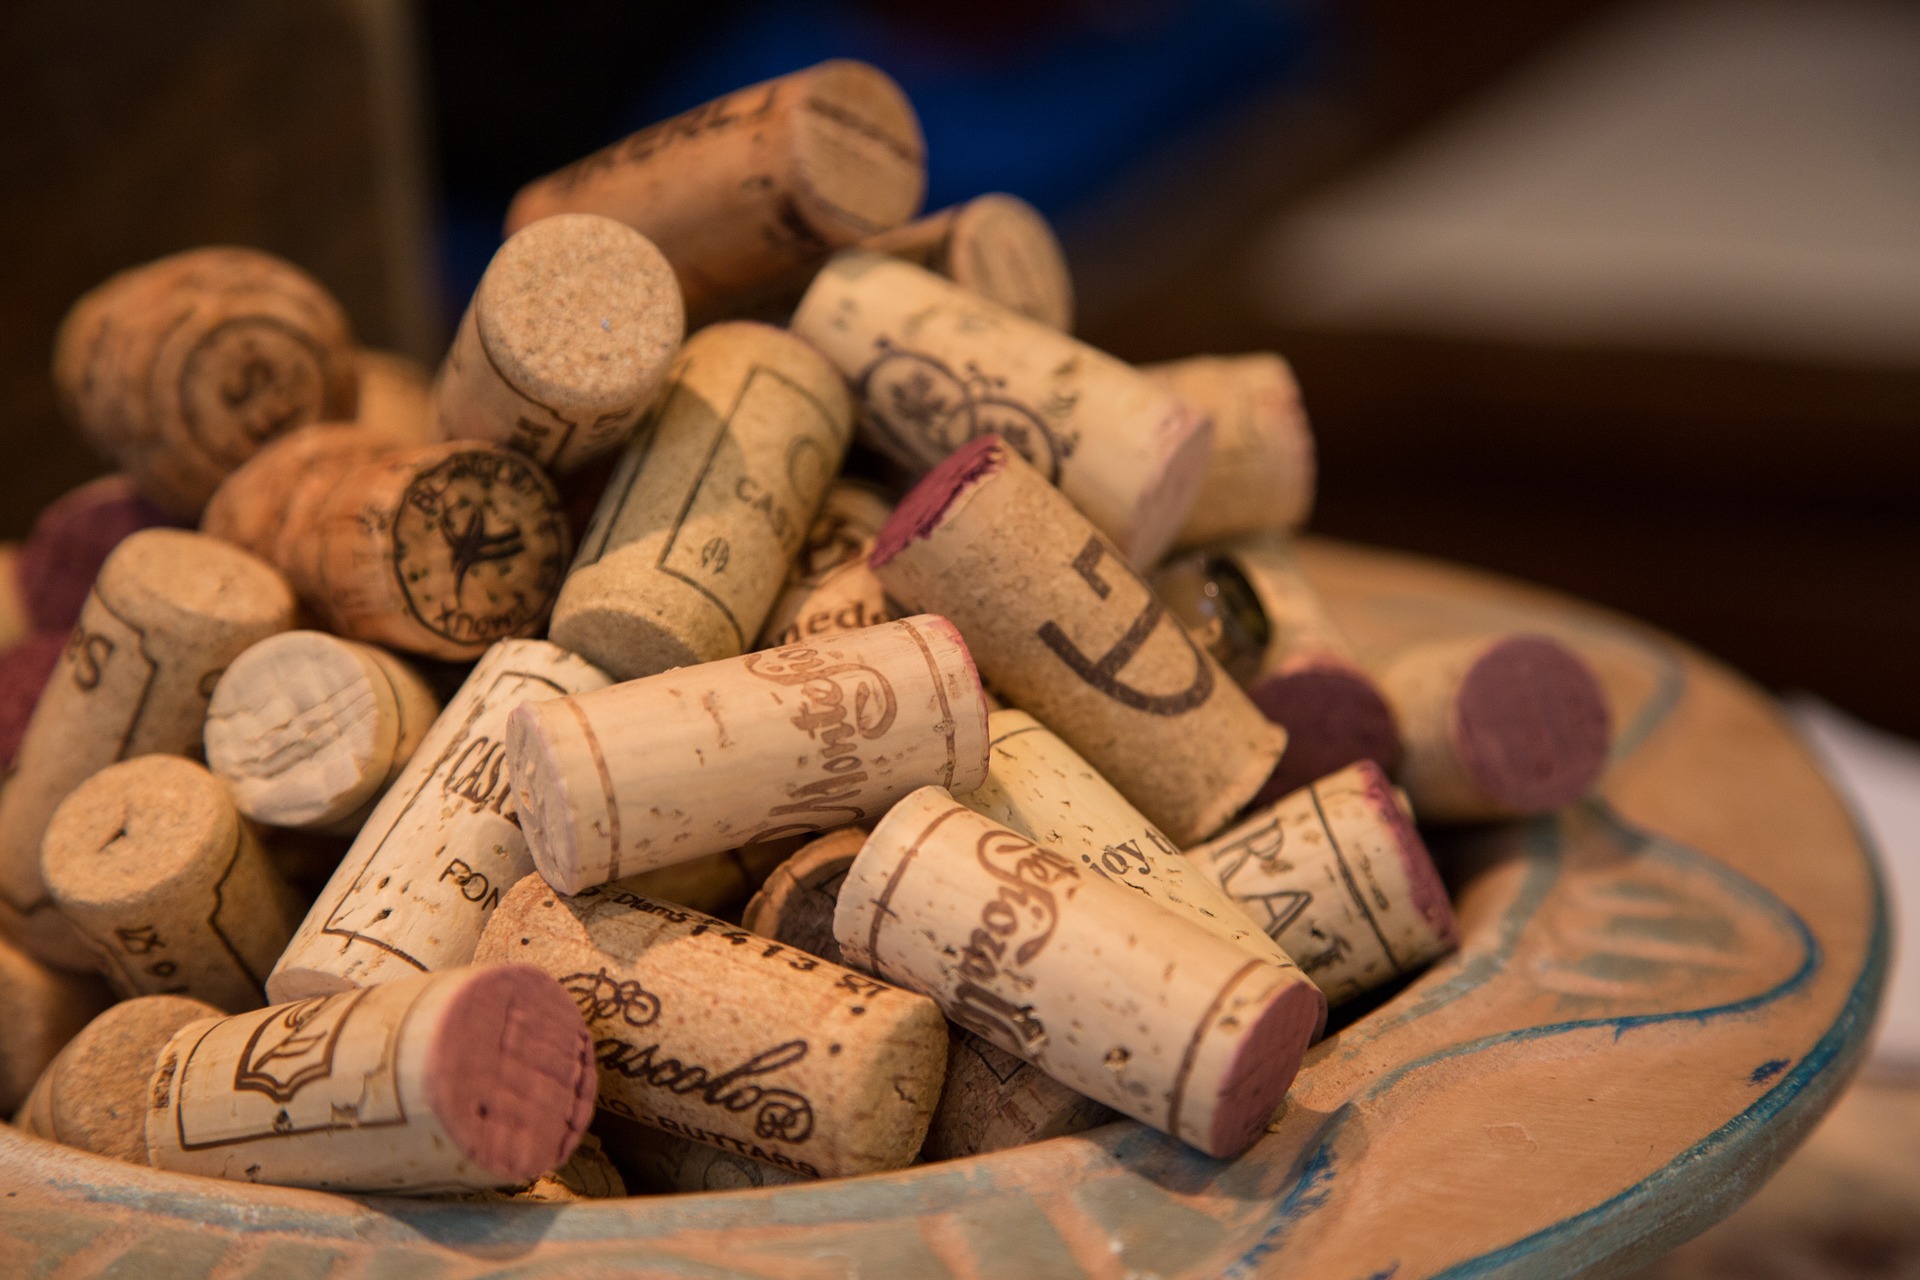 ワインの栓は奥深い 進化を続けるワイン栓の世界